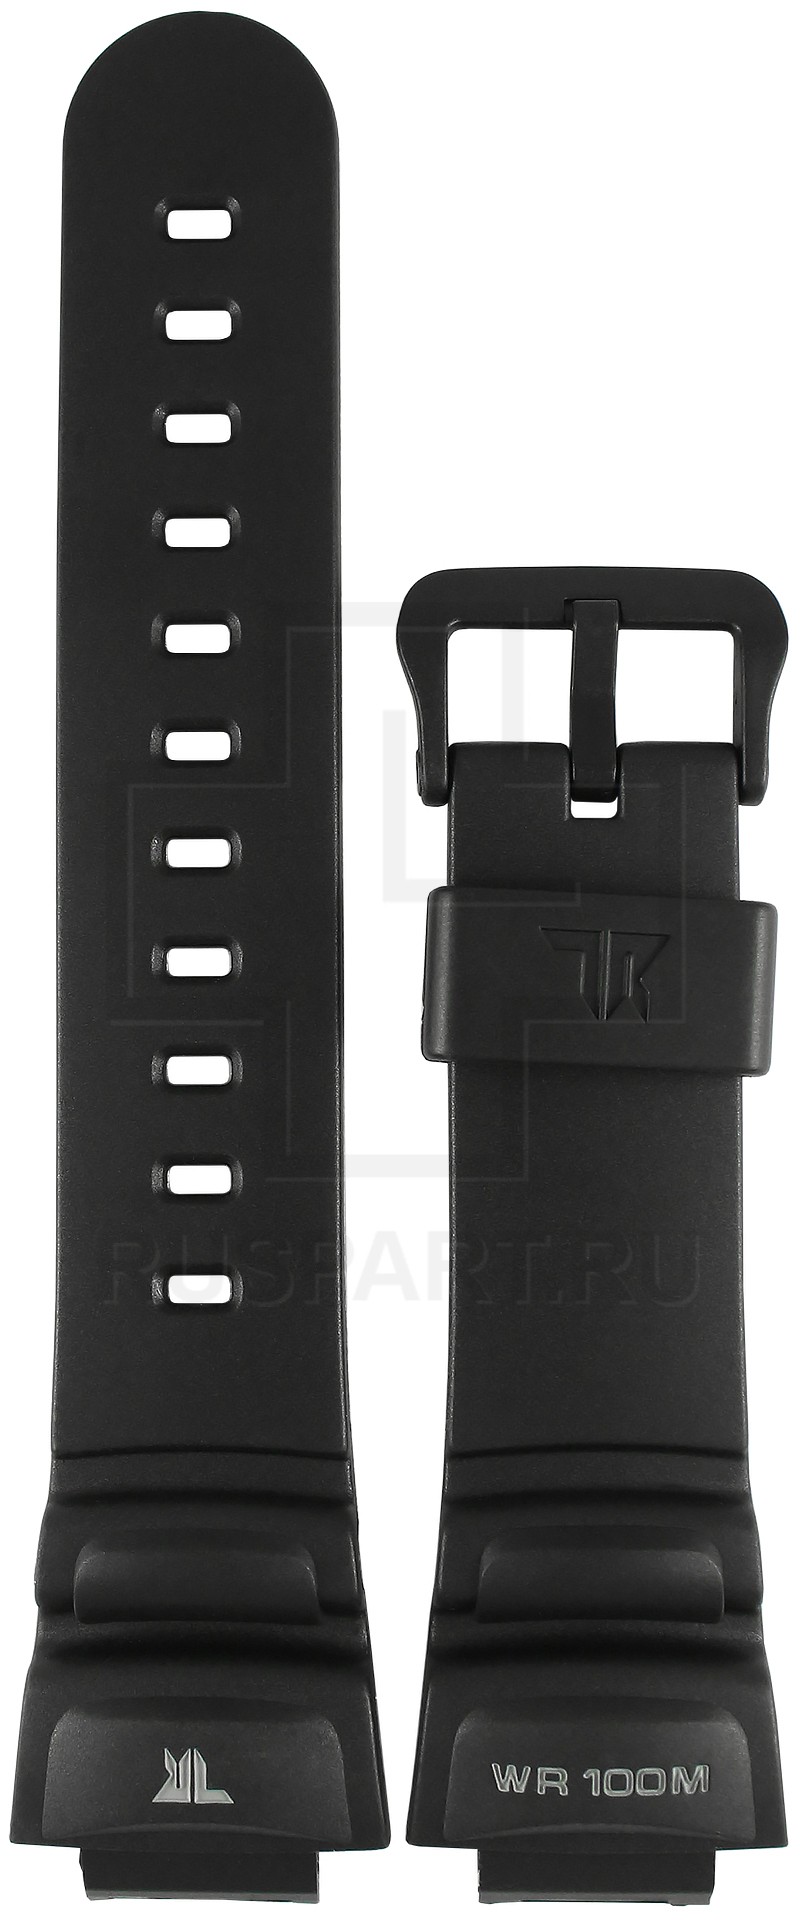 Ремешок для часов Casio TRT-100H-1AV (цвет: Черный, материал: Пластик, ширина ремешка: 22мм) - купить в интернет-магазине Watchband.ru.